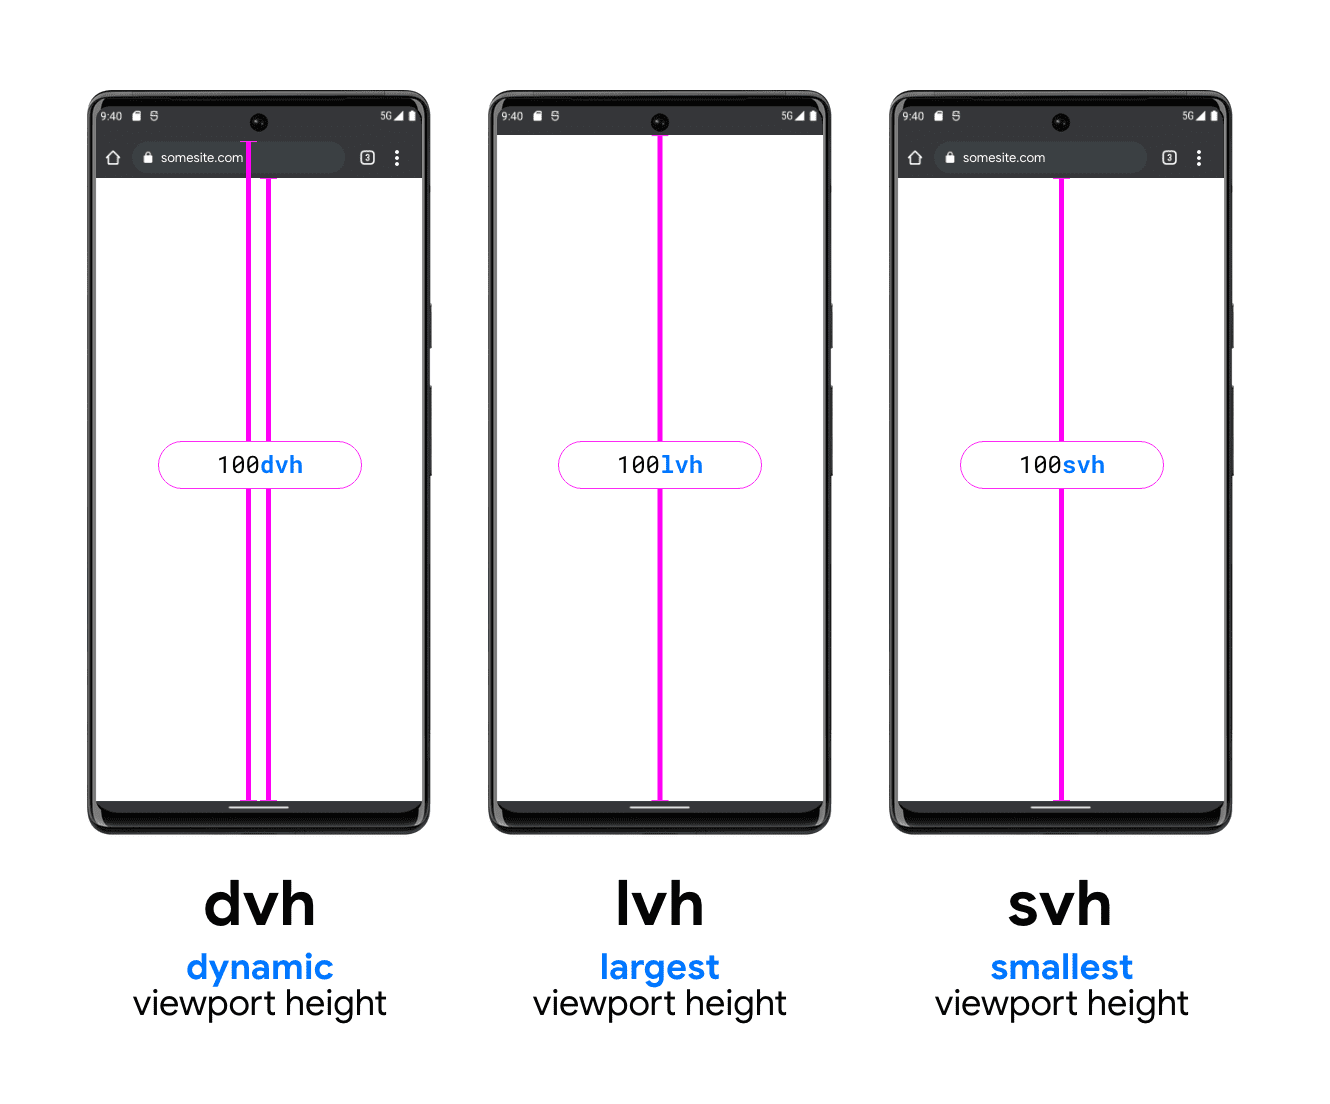 Grafik mit drei Smartphones zur Veranschaulichung von DVH, LVH und SVH Das DVH-Beispieltelefon hat zwei vertikale Linien: eine zwischen unten in der Suchleiste und unten im Darstellungsbereich und eine dazwischen über der Suchleiste (unter der Systemstatusleiste) bis zum unteren Rand des Darstellungsbereichs. Sie zeigen, wie DVH eine dieser beiden Längen haben kann. Die LVH wird in der Mitte mit einer Linie zwischen dem unteren Rand der Gerätestatusleiste und der Schaltfläche im Darstellungsbereich des Smartphones angezeigt. Das letzte Beispiel ist die SVH-Einheit mit einer Linie vom unteren Rand der Browsersuchleiste bis zum unteren Rand des Darstellungsbereichs.